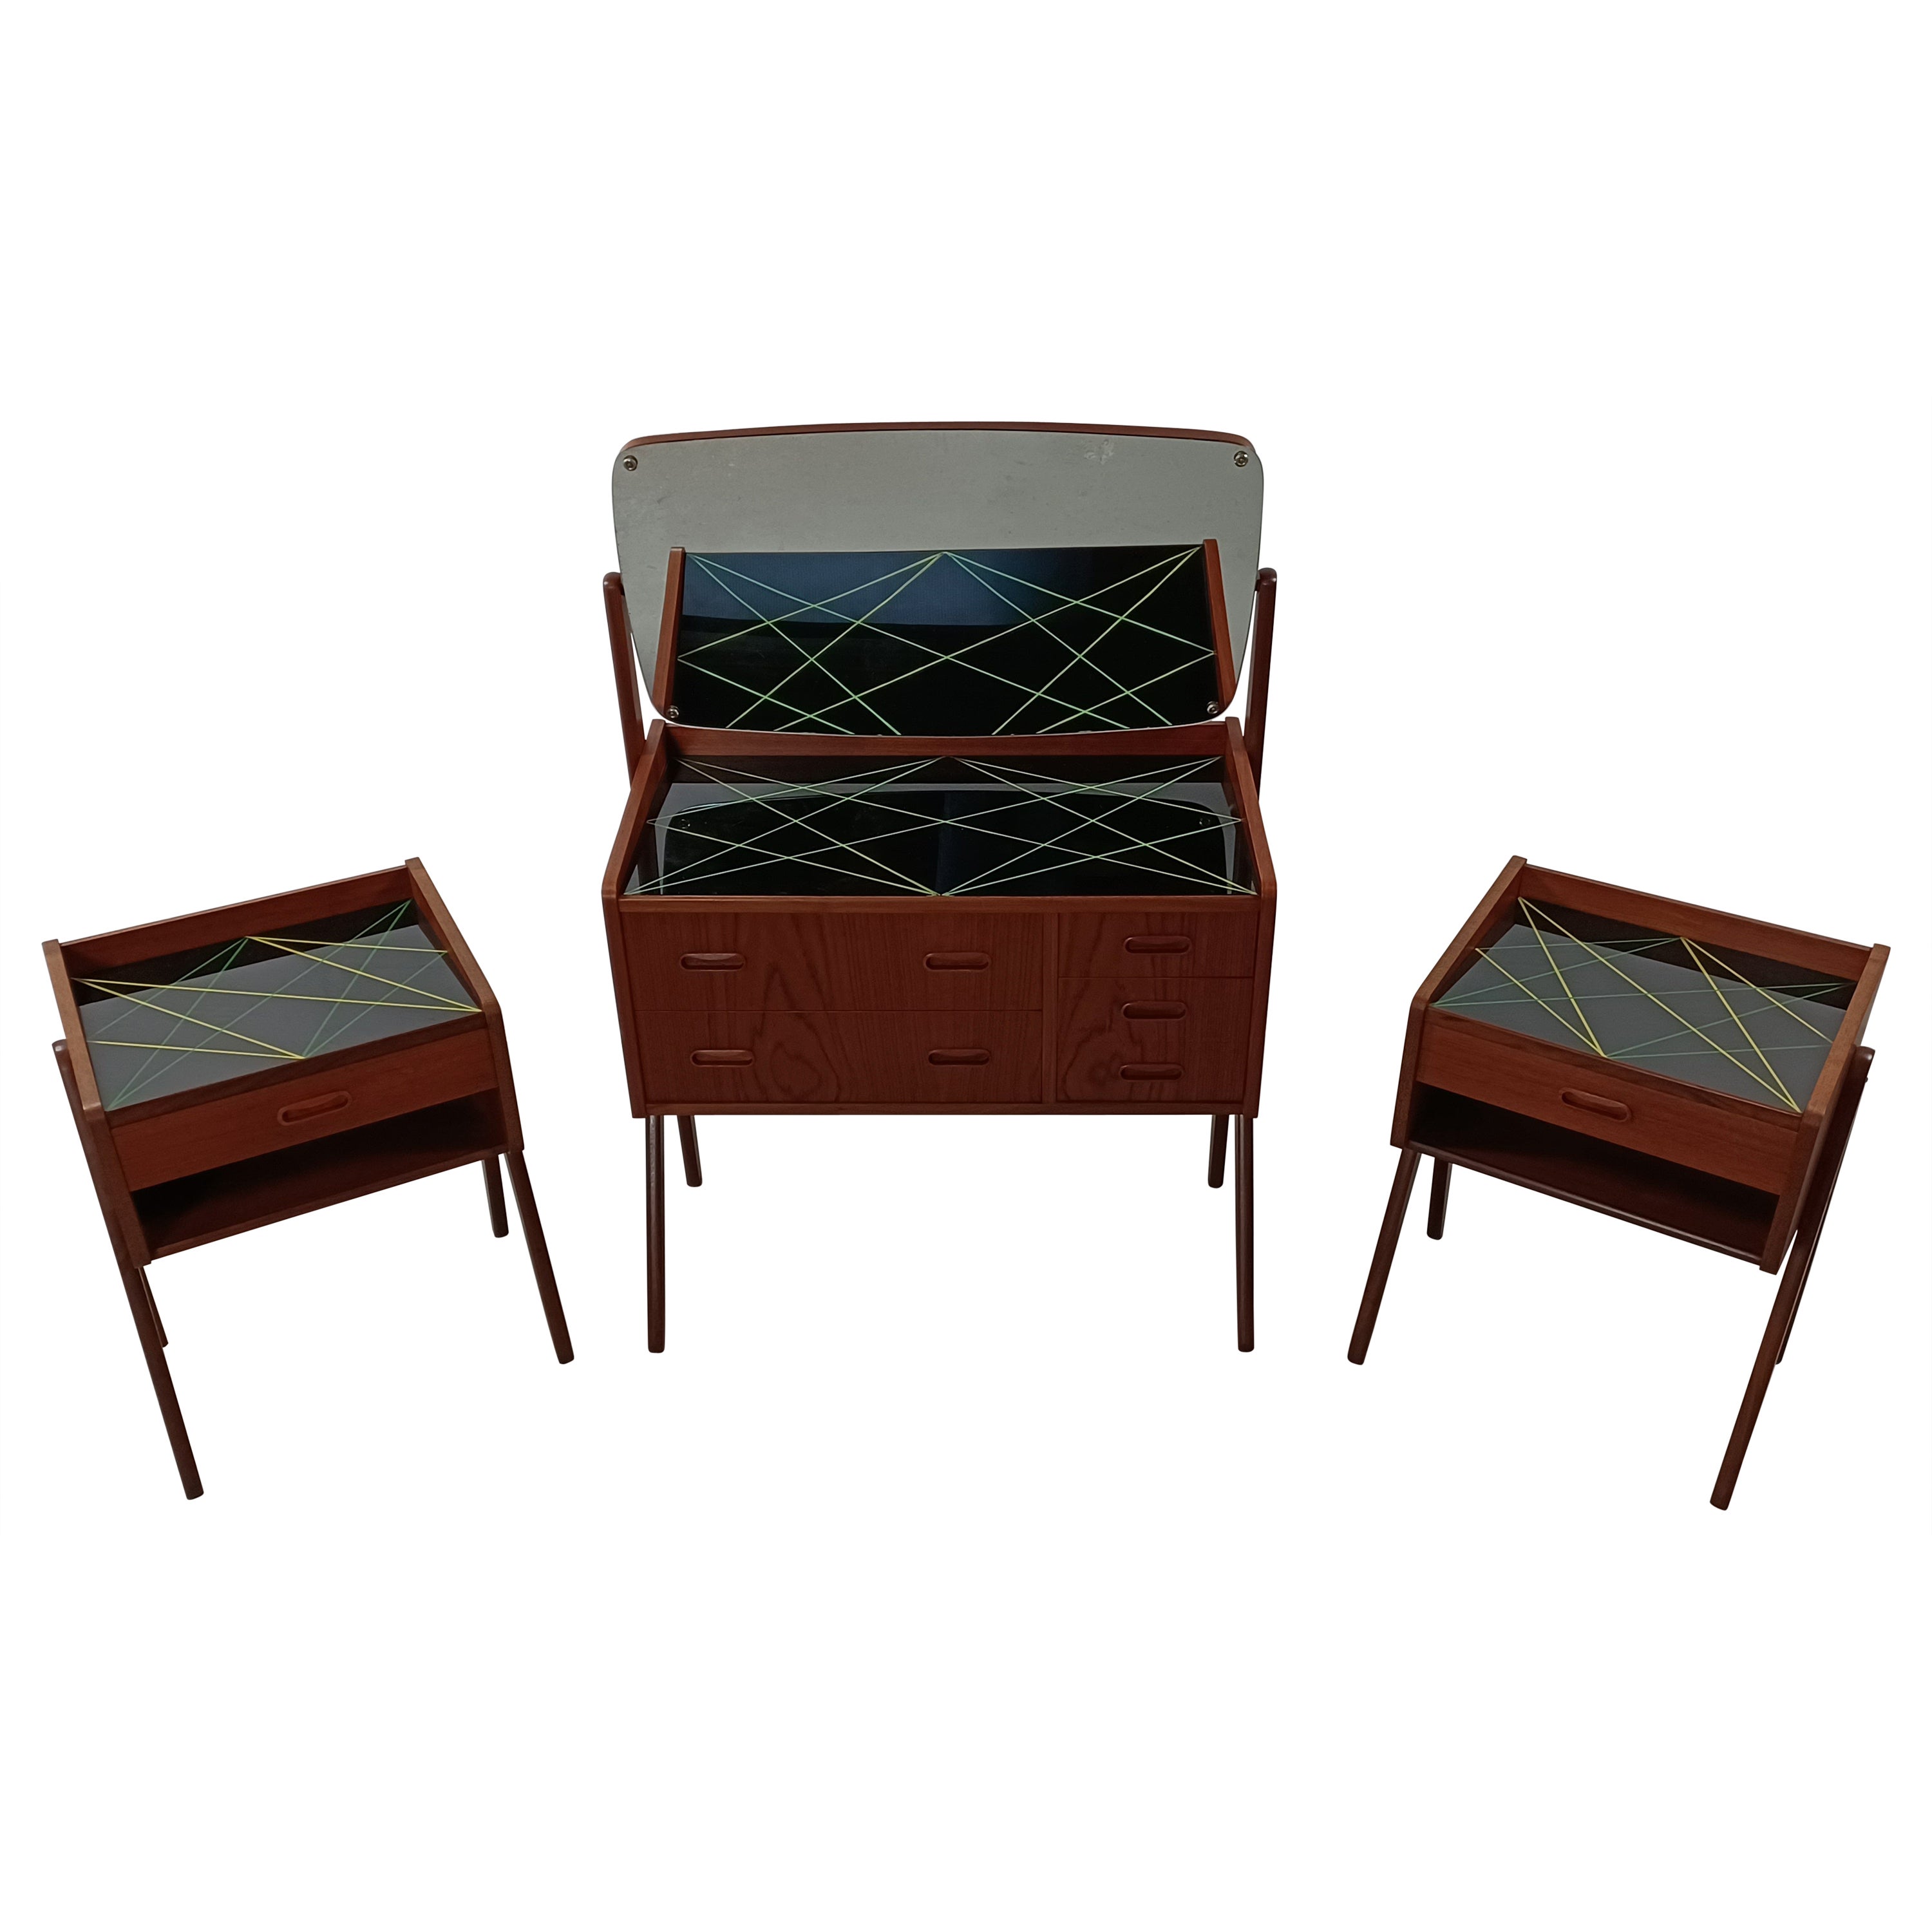 Table de coiffeuse en teck des années 1960 et deux tables de nuit avec plateaux en verre décorés